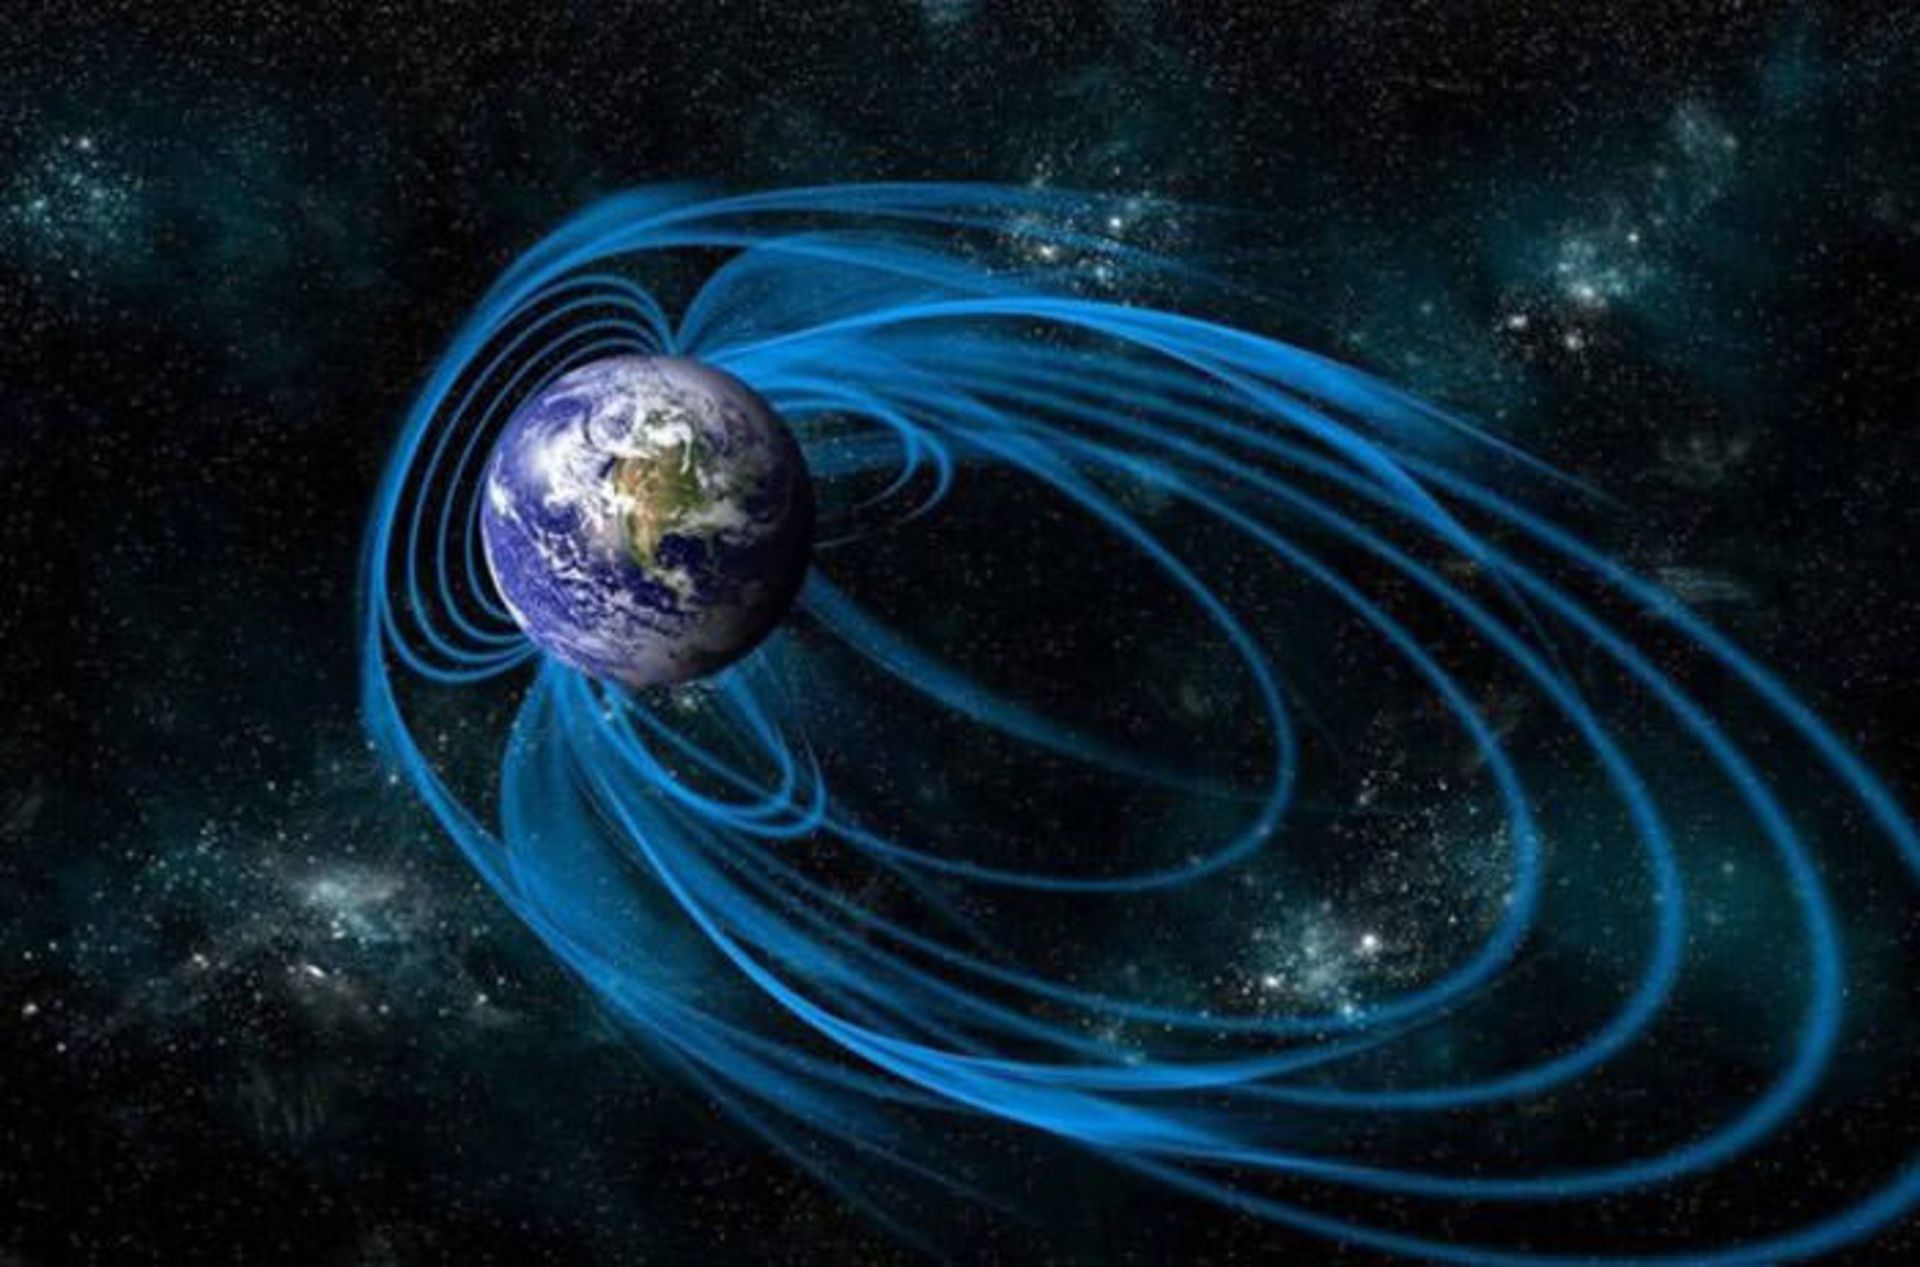 مرجع متخصصين ايران ميدان مغناطيسي زمين / Earth's magnetic field